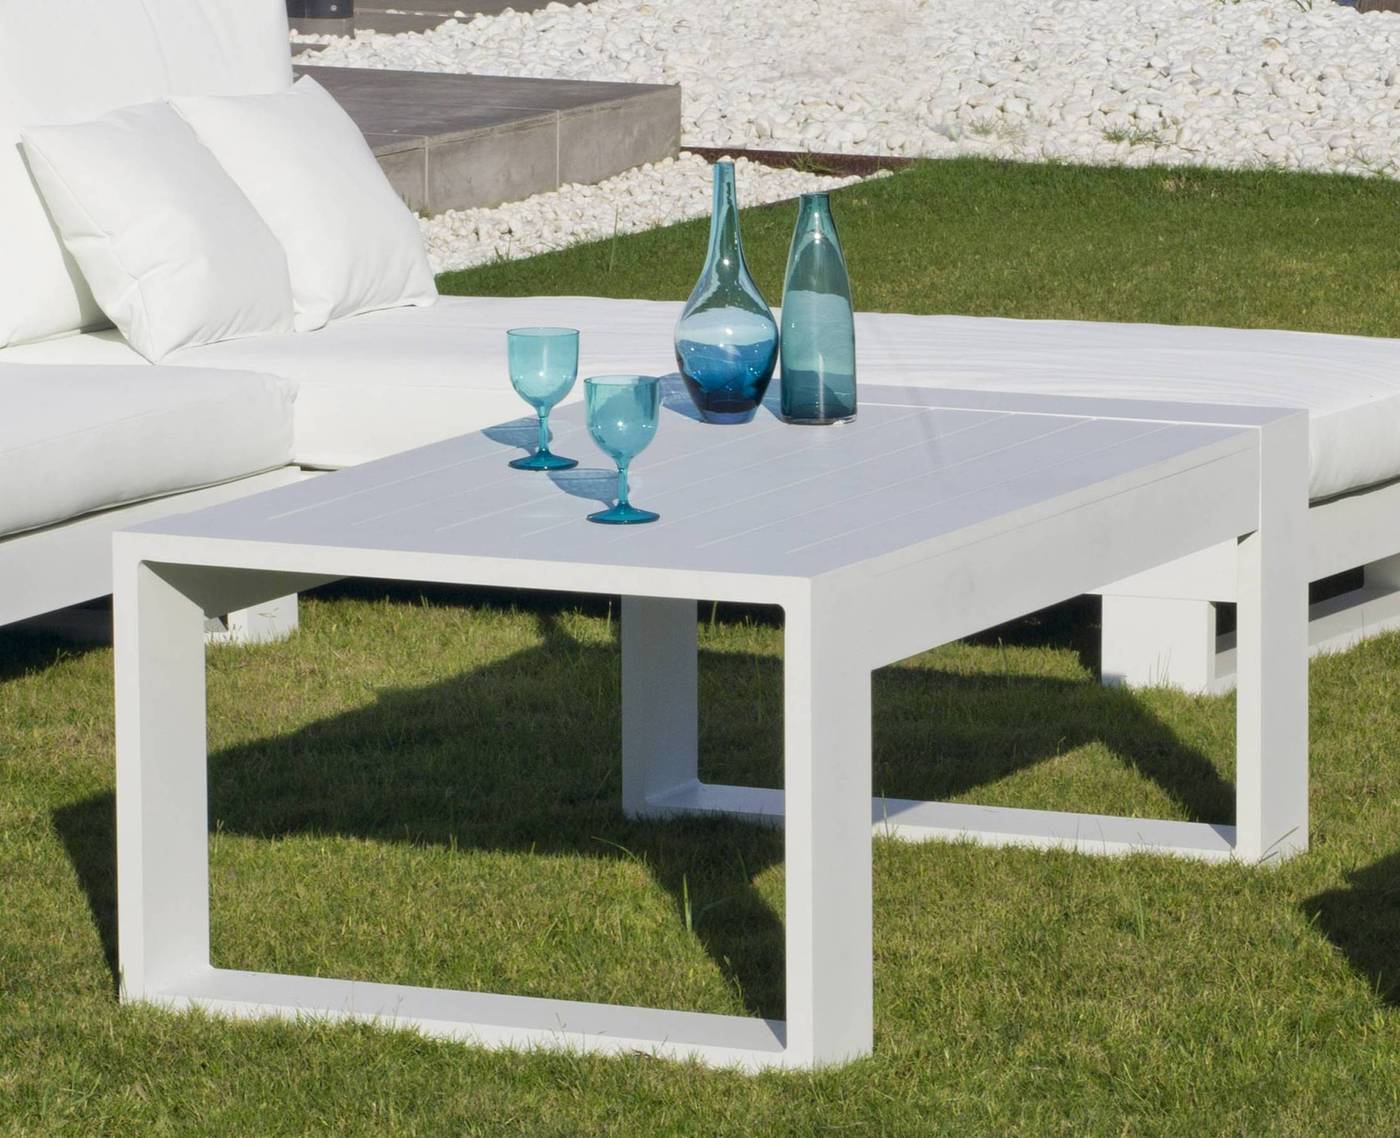 Set Aluminio Luxe Cartago-9 - Conjunto lujoso y robusto de aluminio: 1 sofá de 2 plazas + 2 sillones + 2 reposapiés + 1 mesa de centro + cojines.